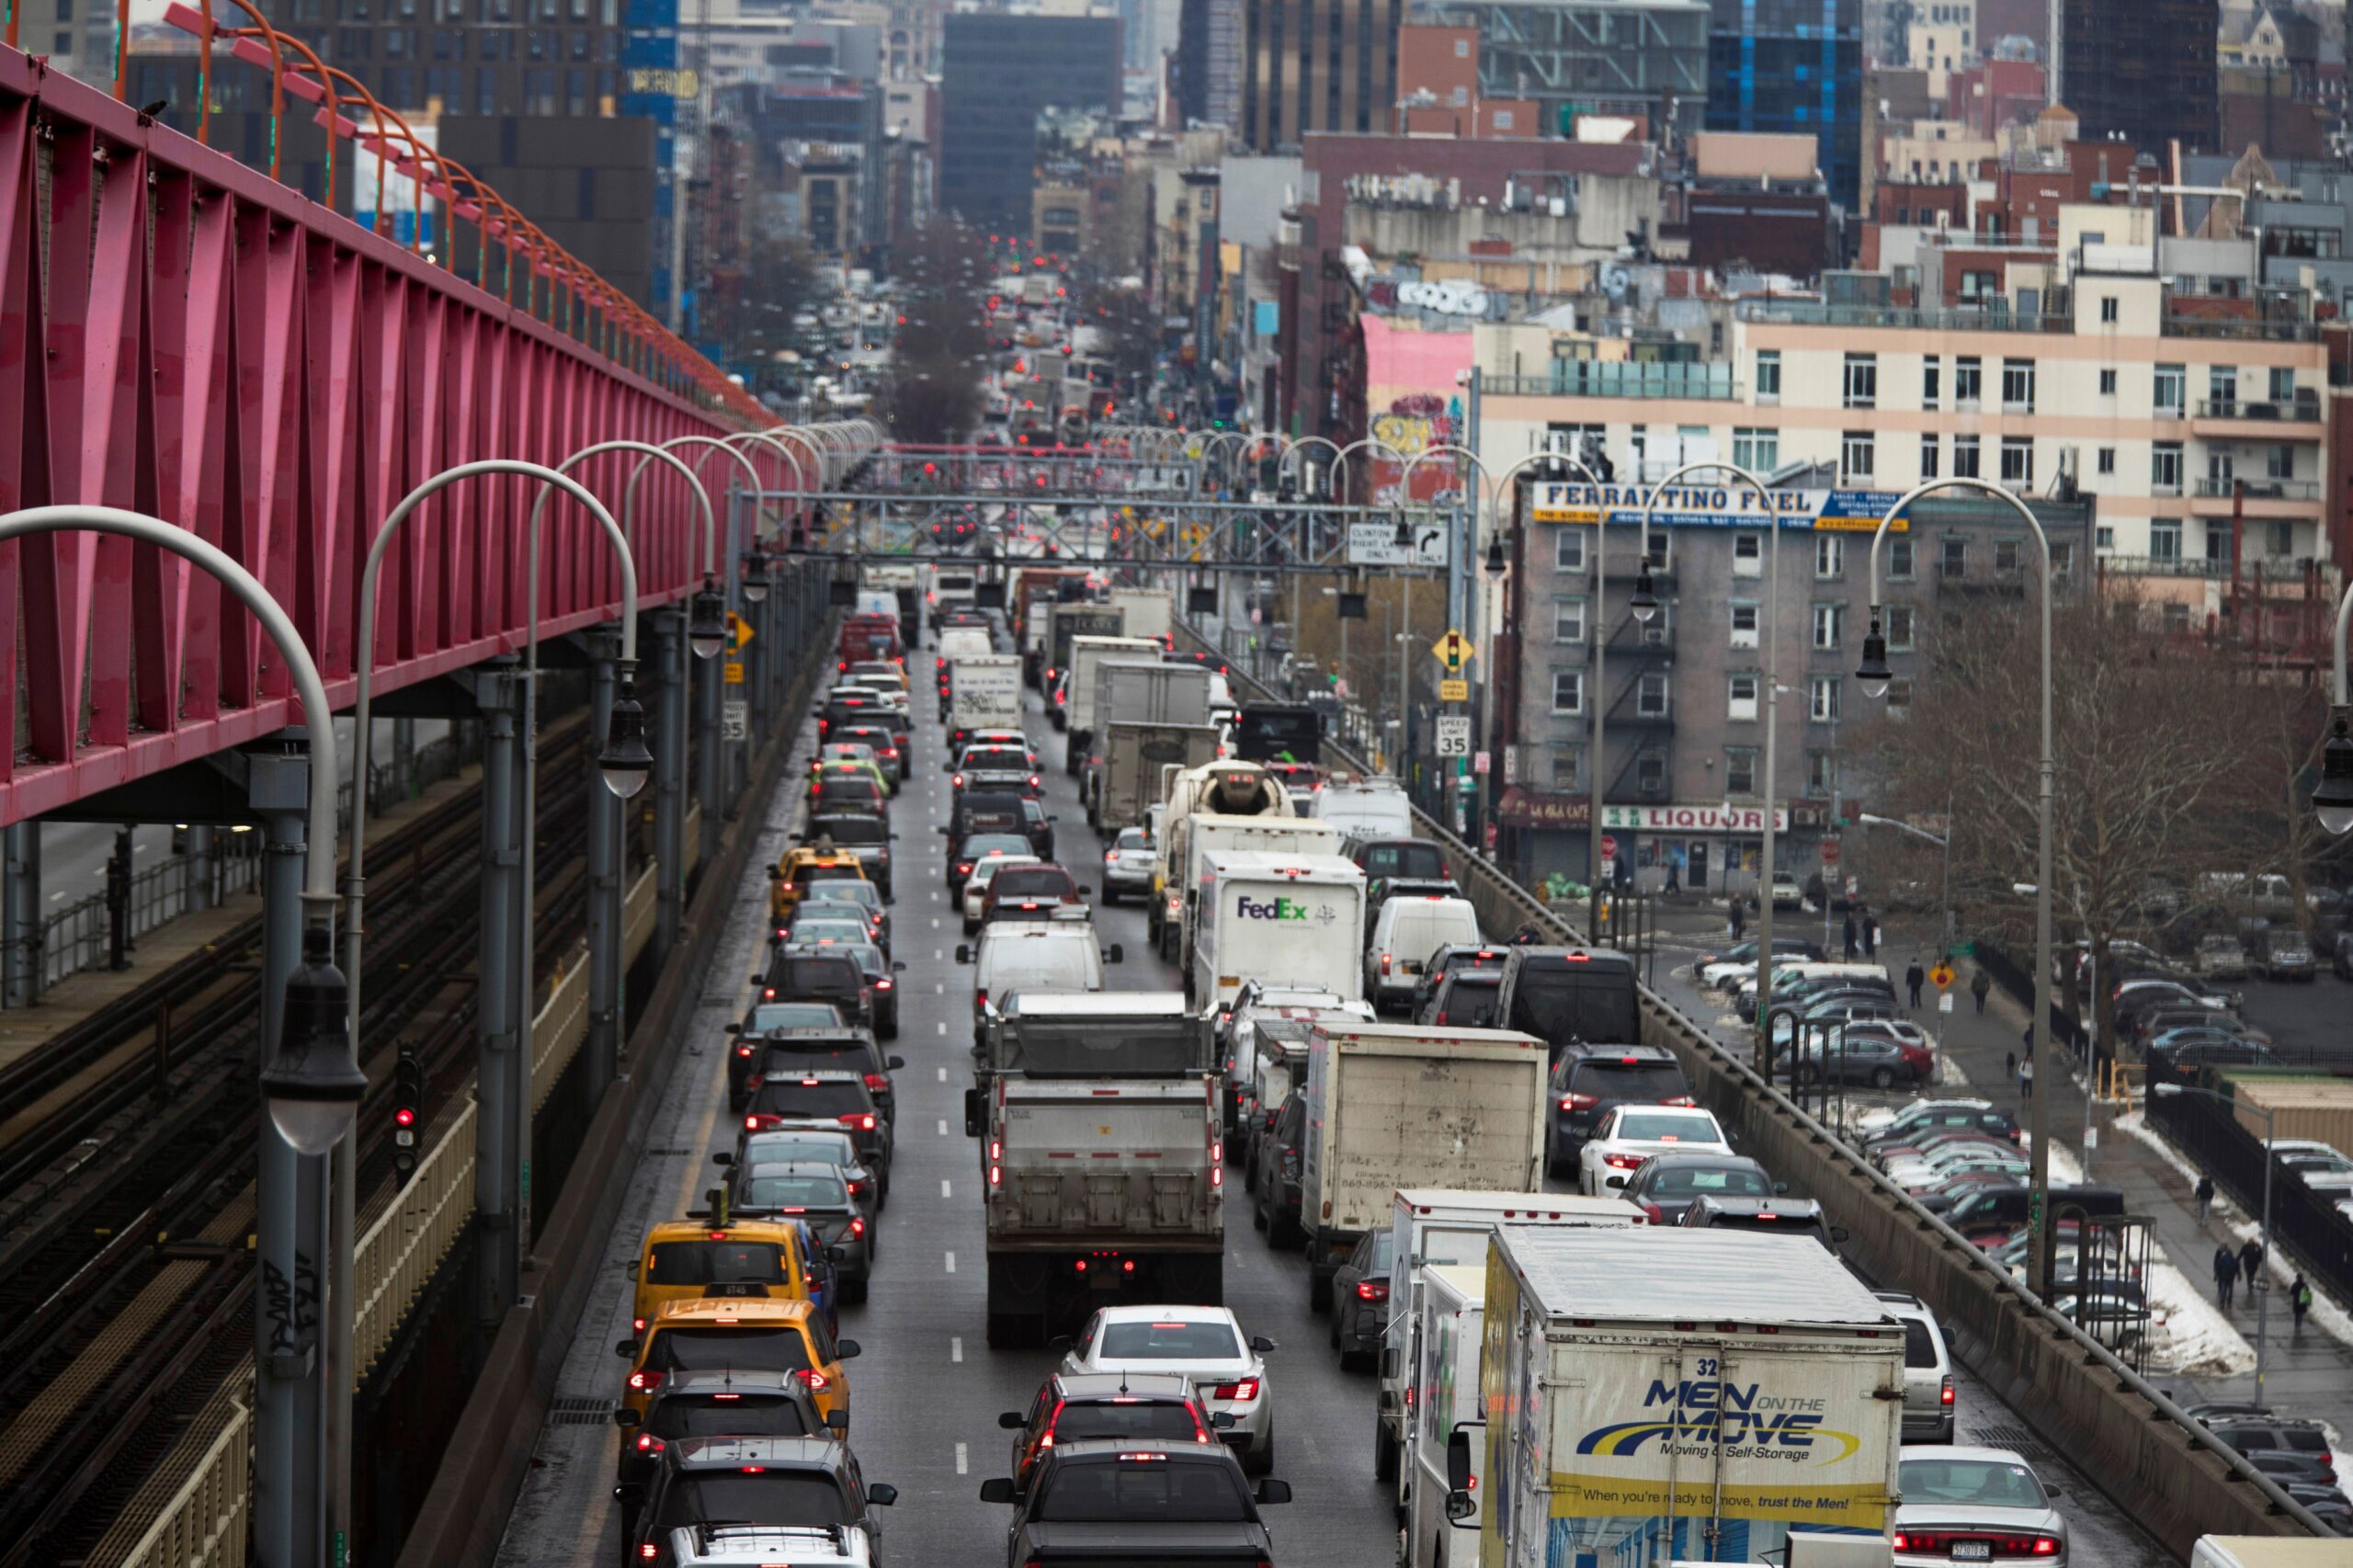 Tarifa de Congestión se aplicará desde el 30 de junio: MTA cobrará peaje para circular en Midtown Nueva York – El Diario NY